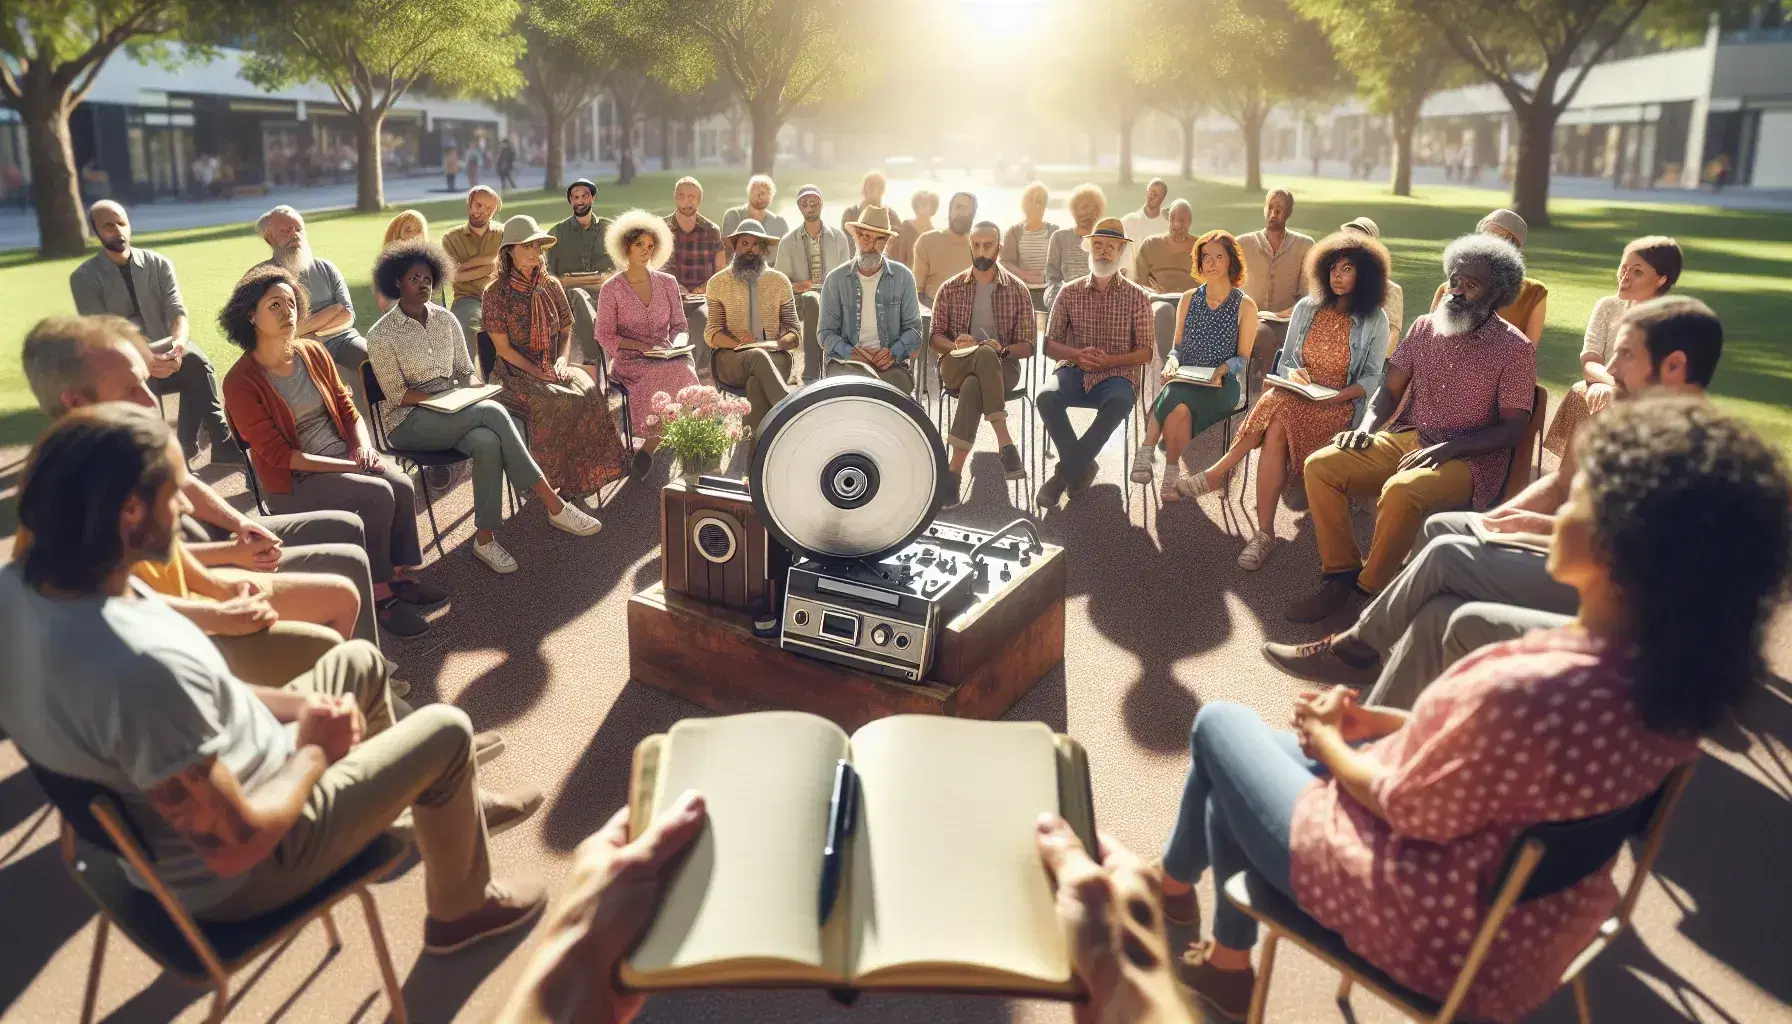 Grupo diverso de personas sentadas en círculo al aire libre enfocadas en un grabador antiguo, con árboles y luz solar filtrándose en un parque tranquilo.